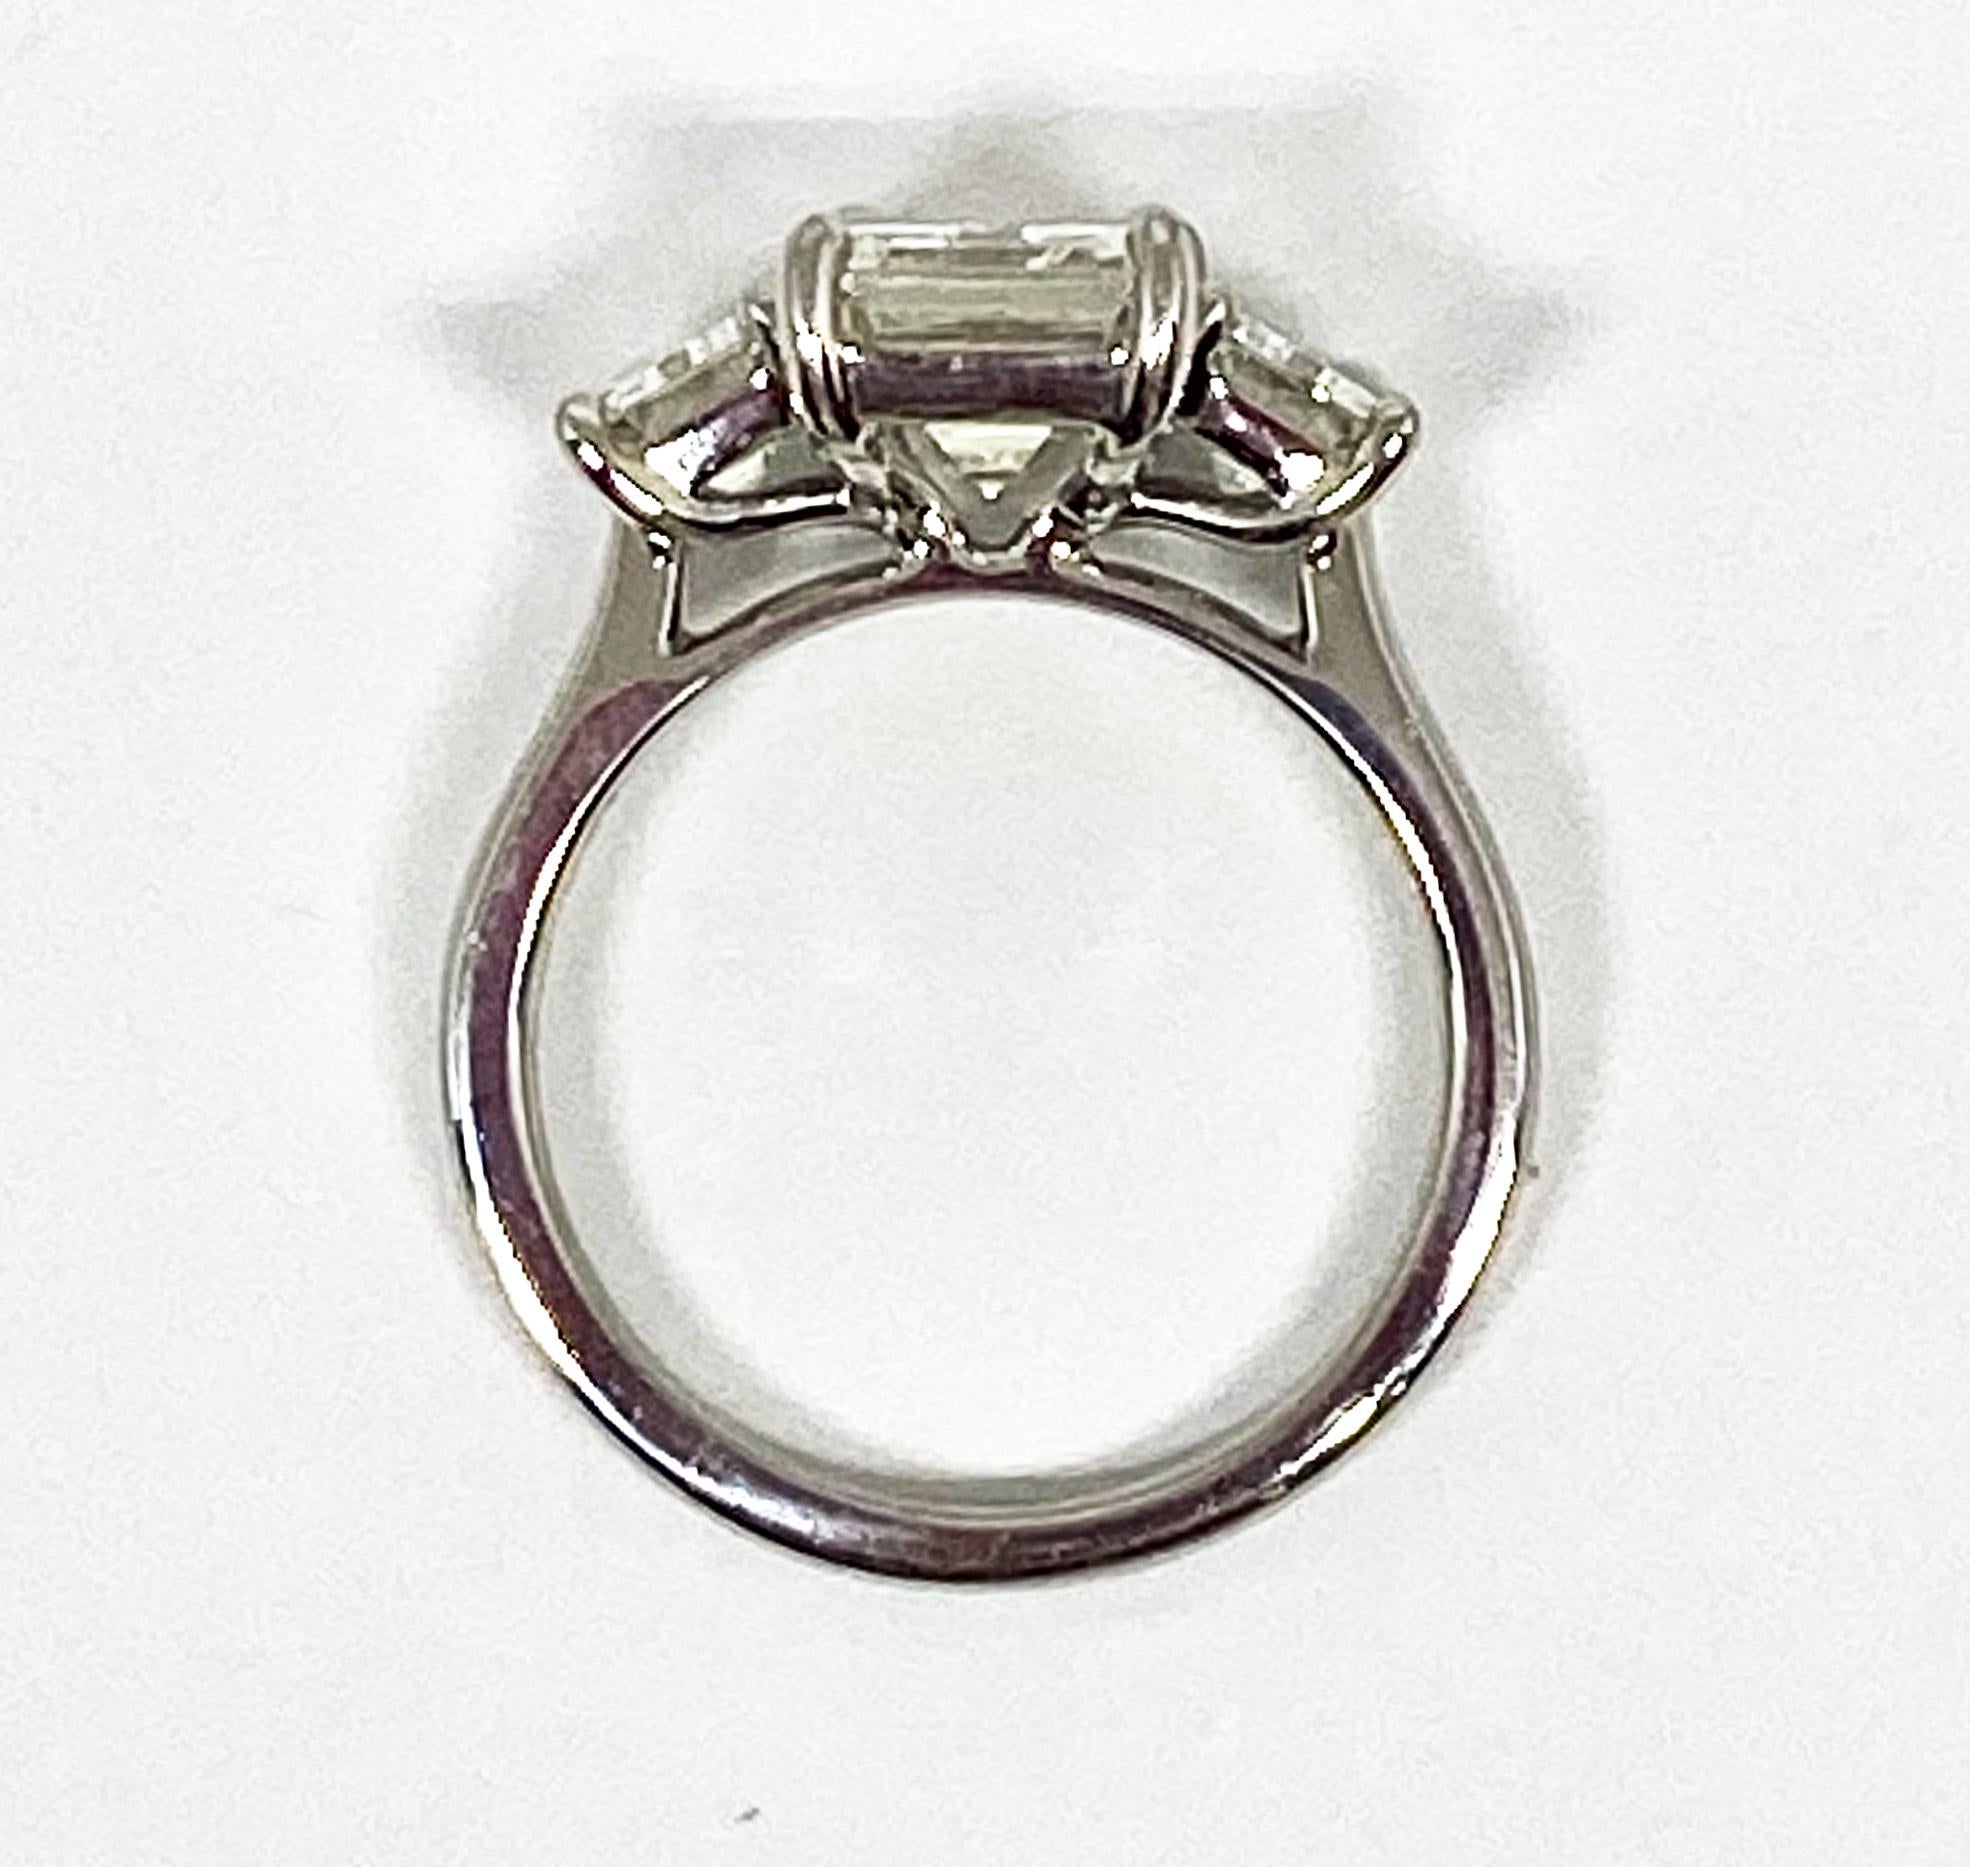 2.5 carat round engagement ring